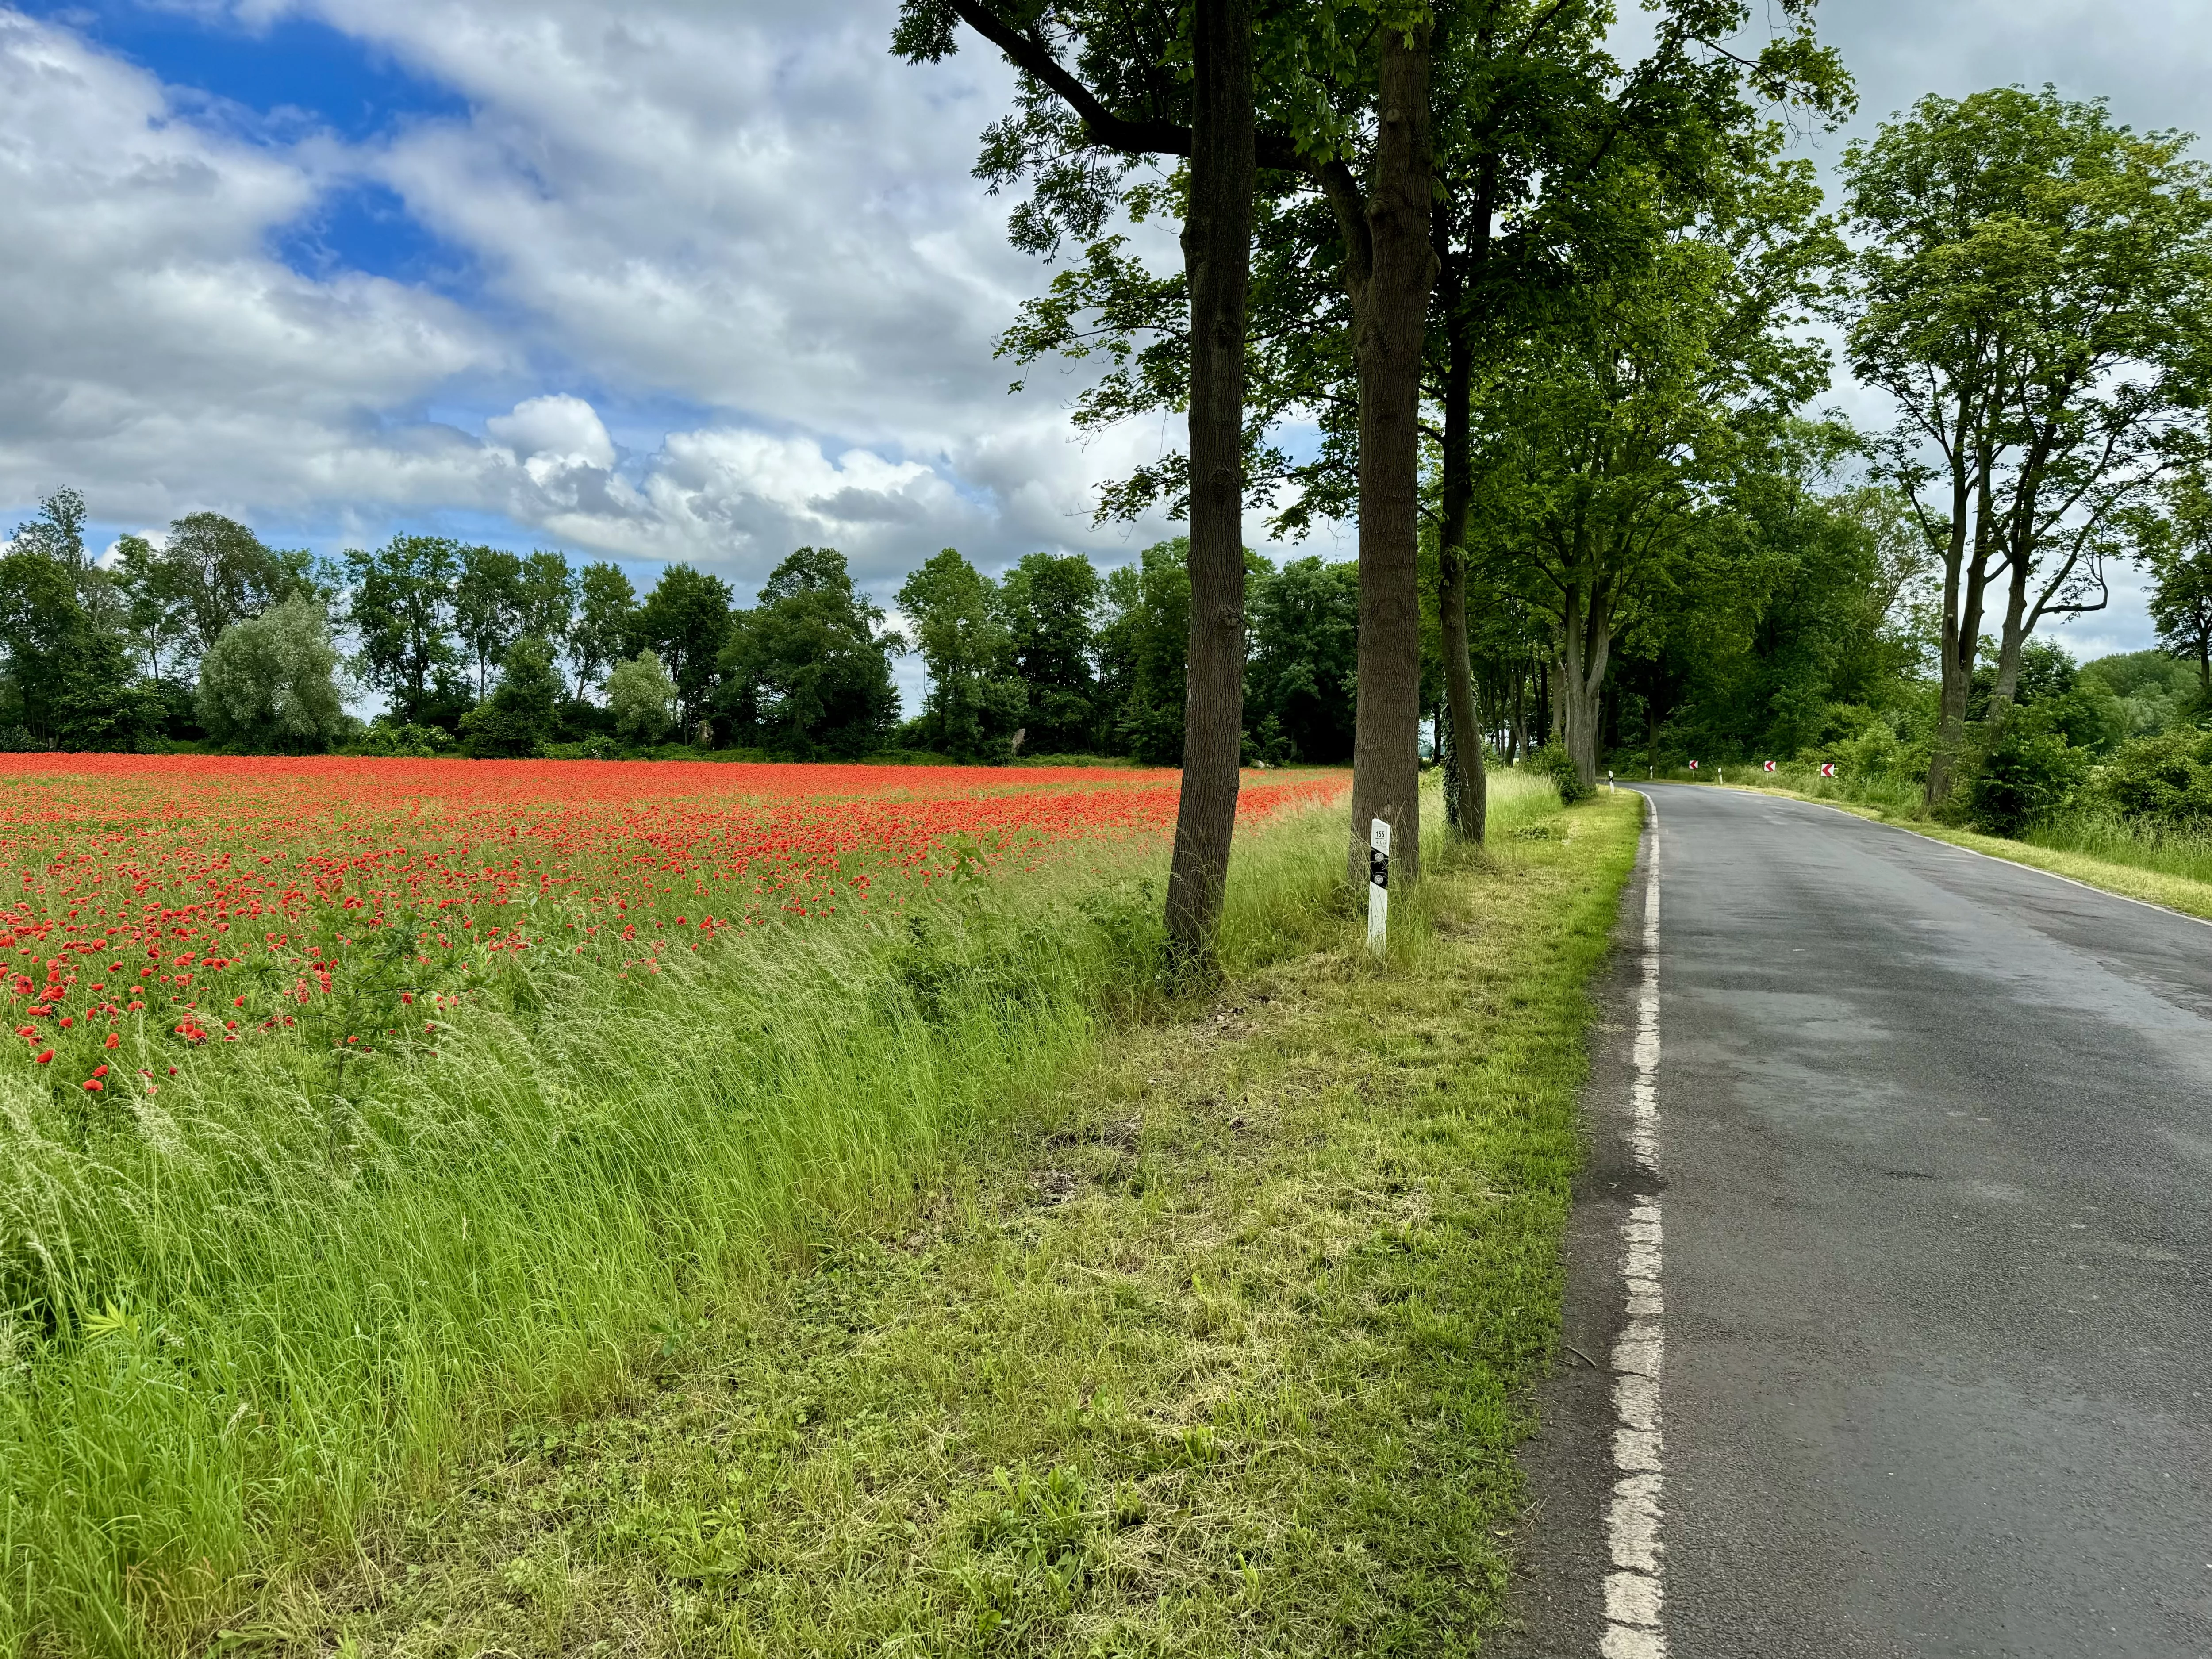 Poppy fields along the road, Germany